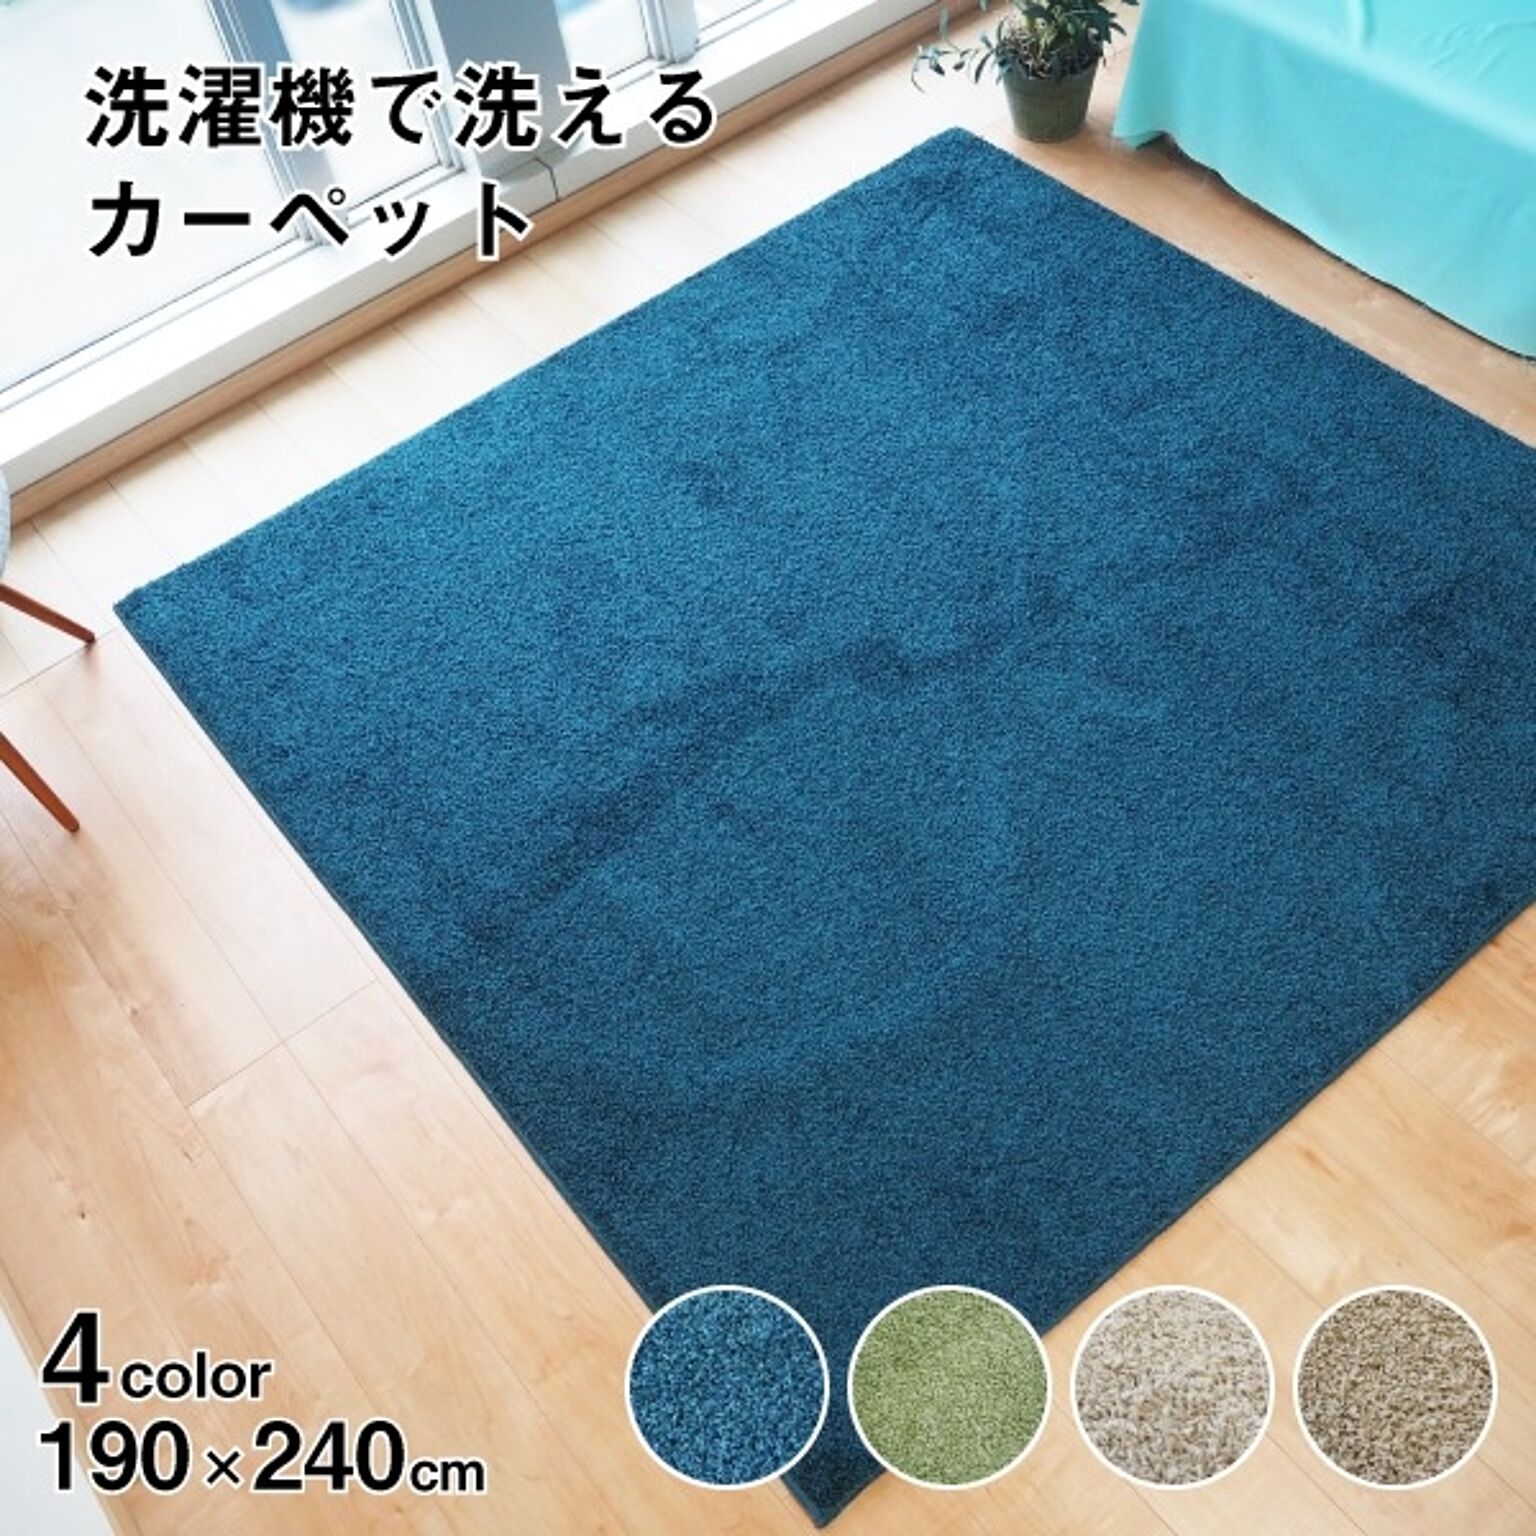 ラグマット 絨毯 約190cm×240cm ネイビー 洗える 日本製 防ダニ 抗菌防臭 床暖房 ホットカーペット 通年使用可 ウォッシュ